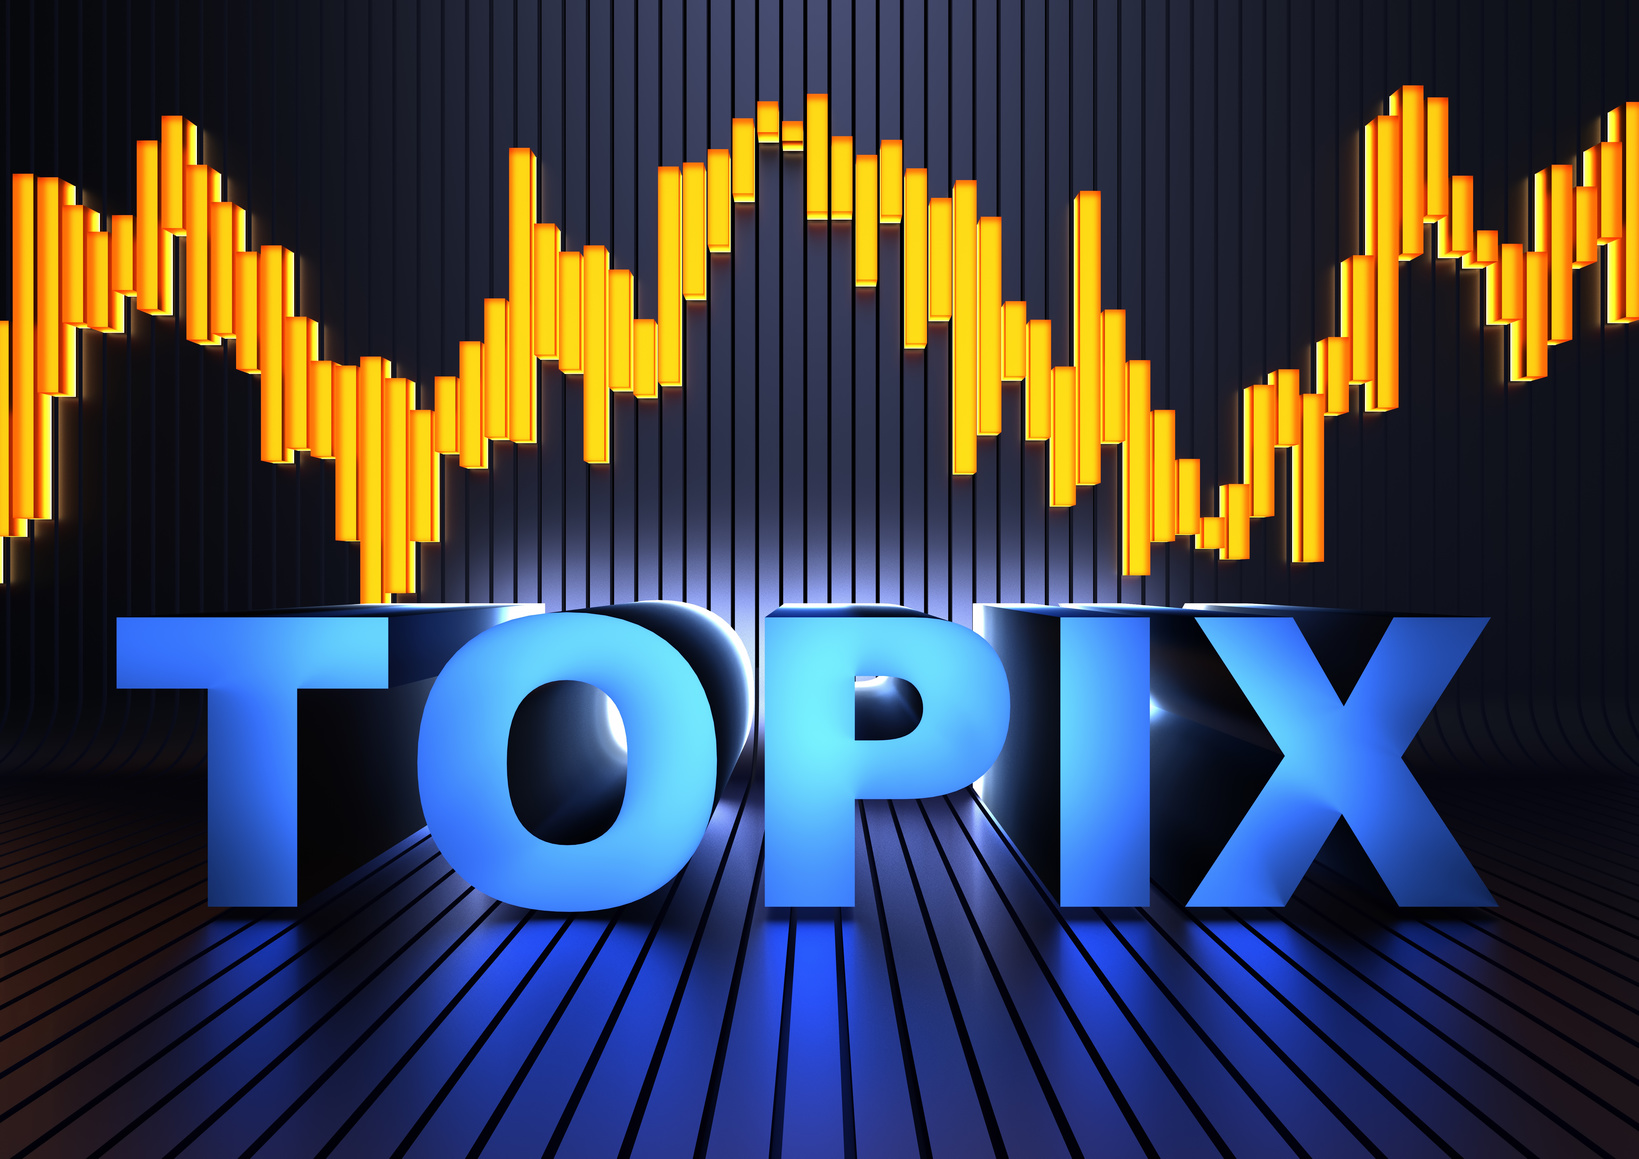 TOPIX(東証株価指数)とは？日経平均株価とは何が異なるかを比較とその概要をわかりやすく解説します。